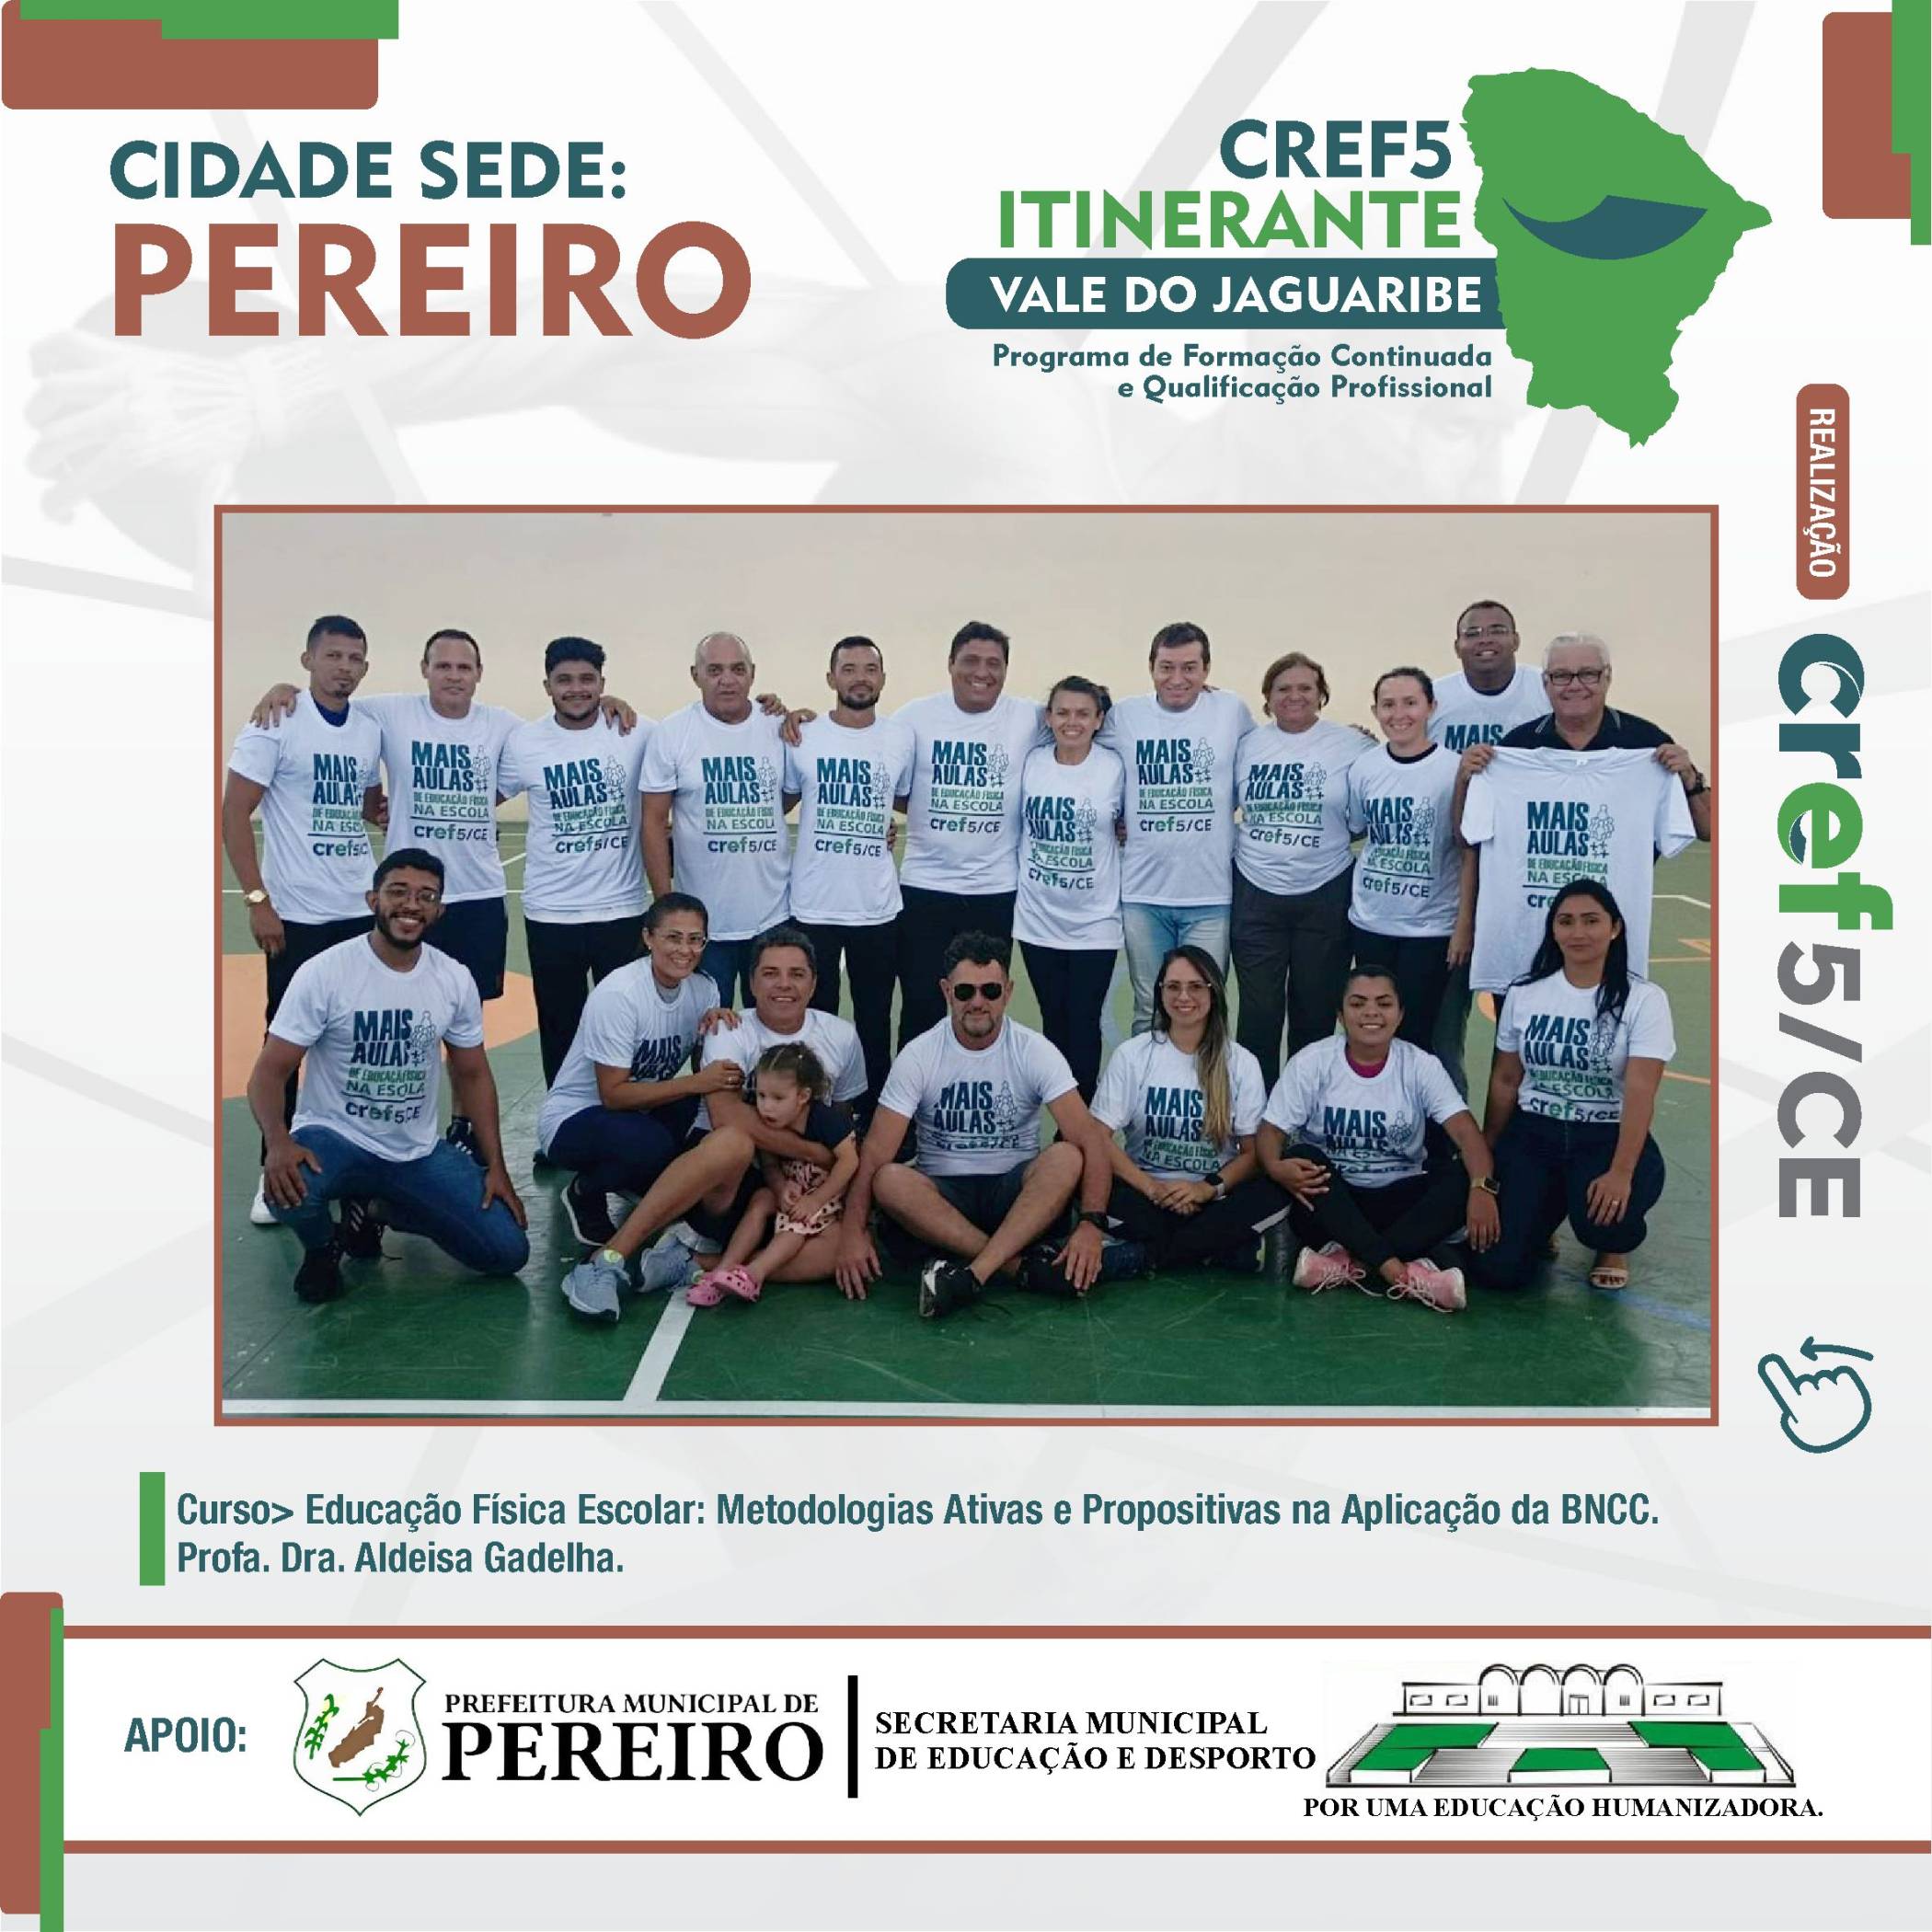 REGISTRO DO CREF5 ITINERANTE EM PEREIRO